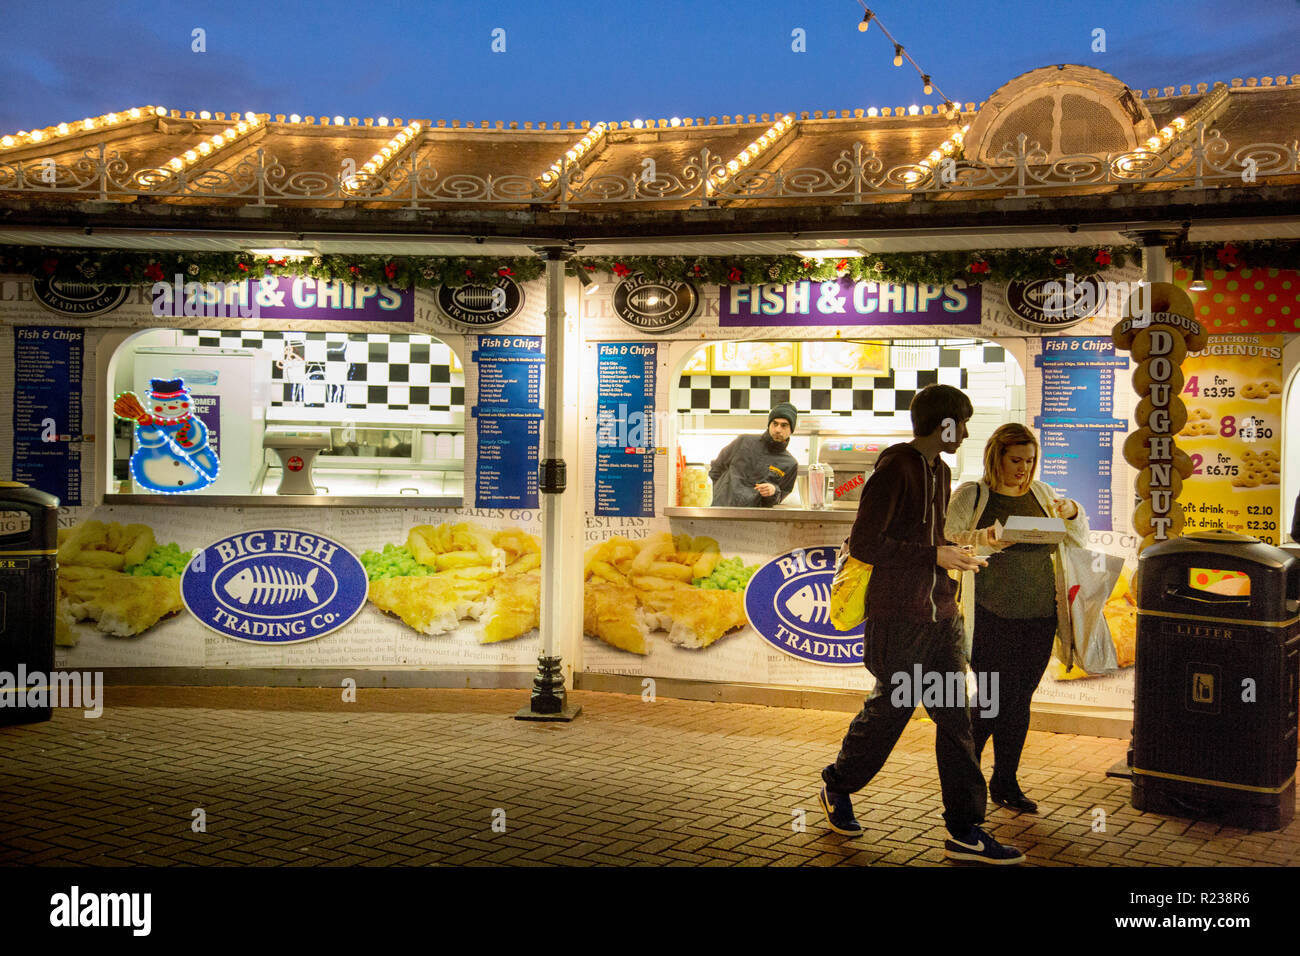 Auf Fisch-und-Chip auf Brighton Pier ein junger Mann und eine Frau Essen kaufen. Overhead, das Dach hat Zeilen von Glühbirnen unter einem Abendhimmel. Stockfoto